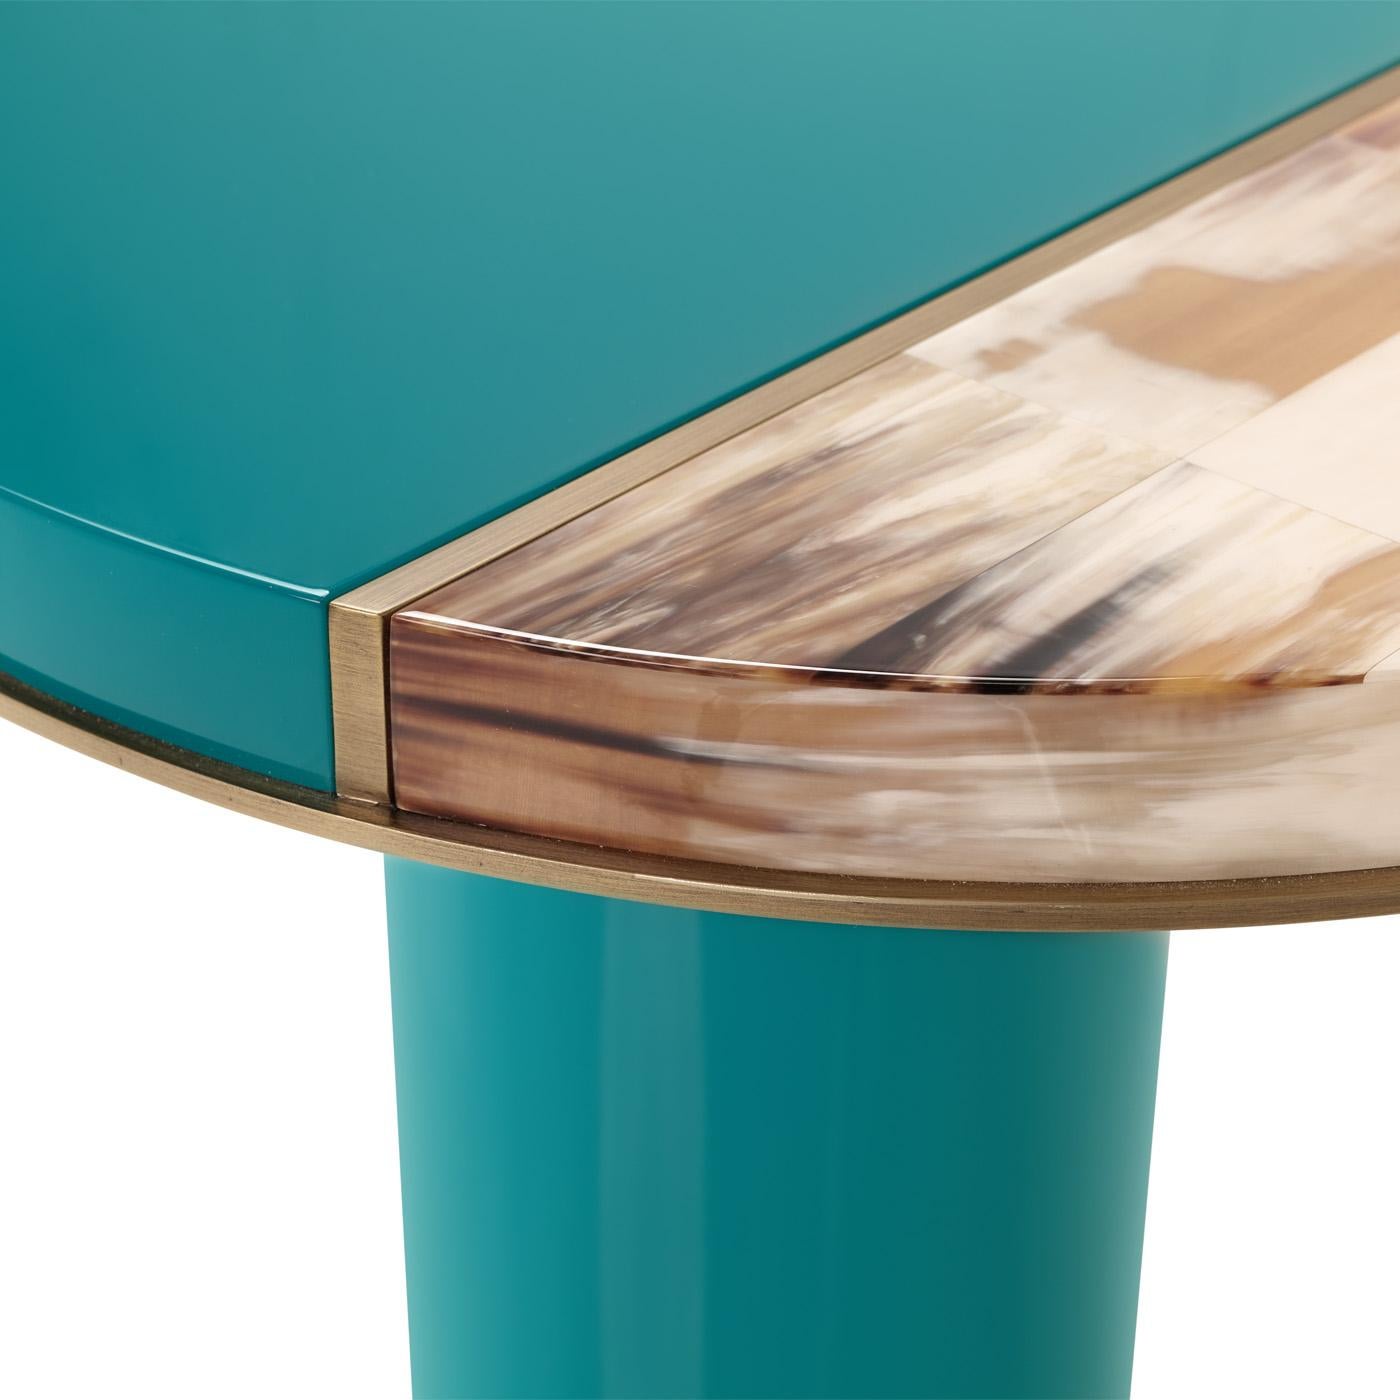 Andria est une table d'appoint raffinée qui trouve sa force expressive dans le mélange magistral des matériaux. Le plateau est fabriqué à la main en bois avec une finition laquée bleu d'eau et ajoute un attrait captivant au design. Il est rehaussé